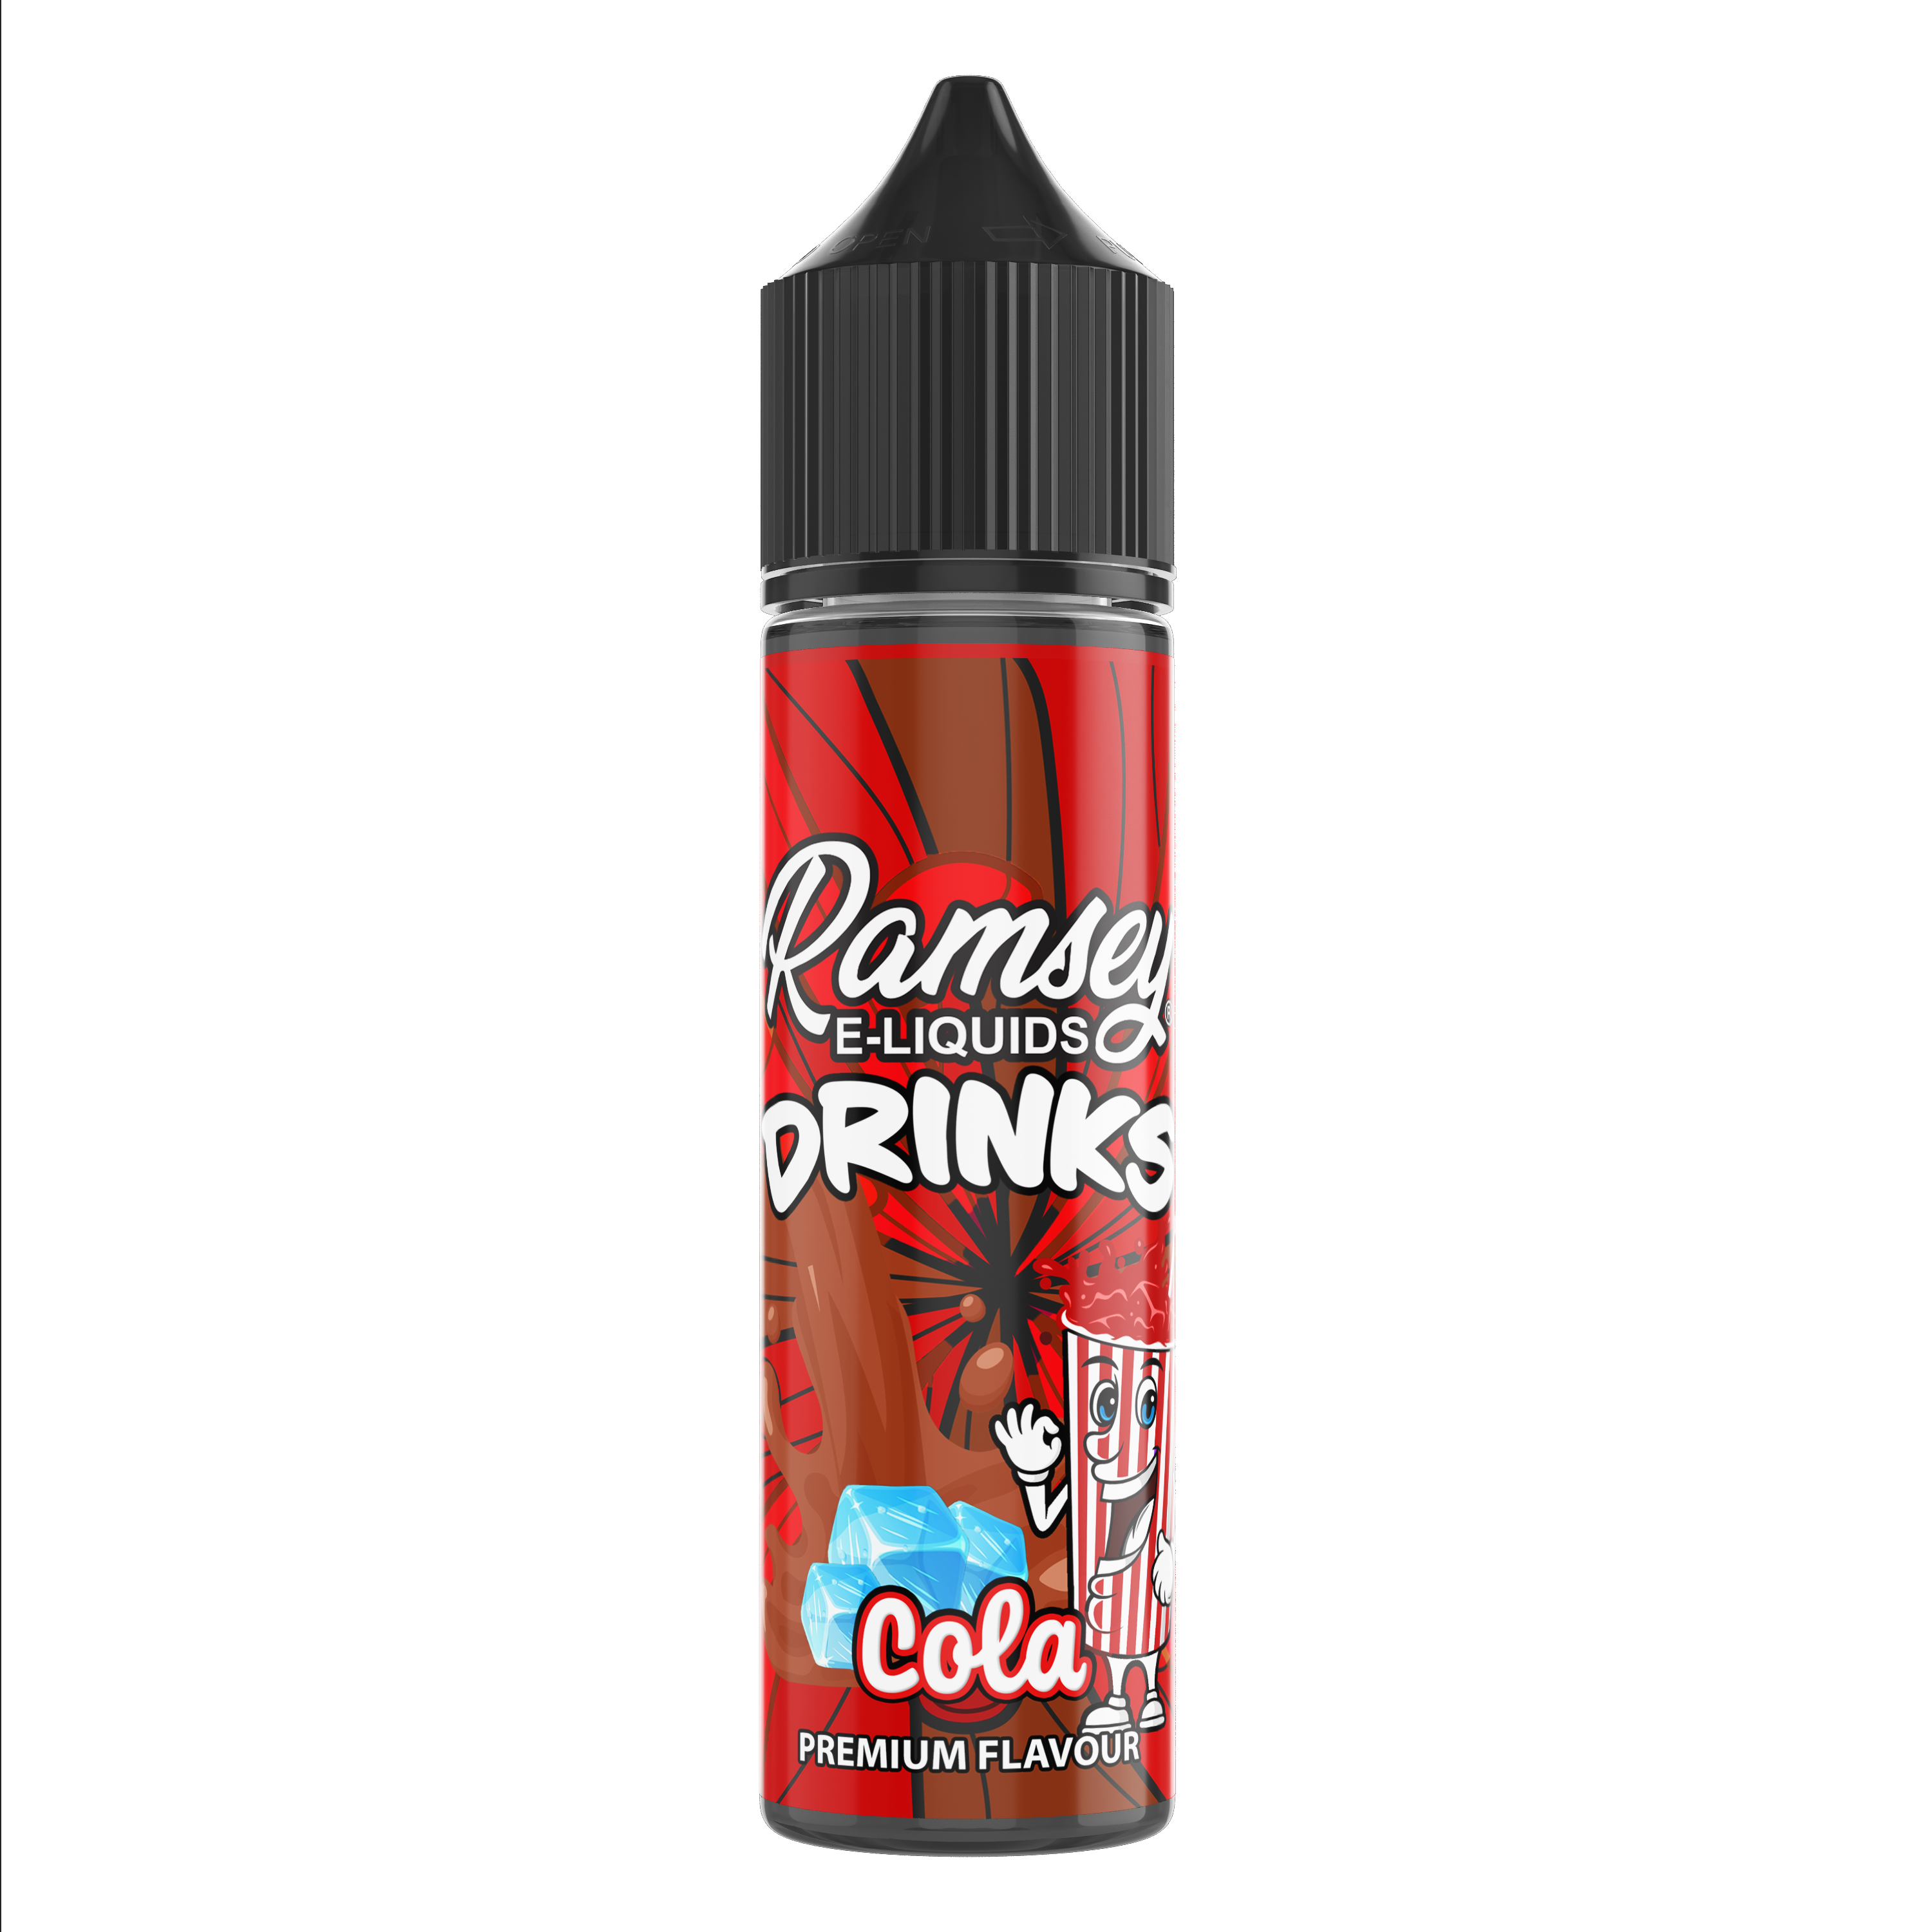 Ramsey E-Liquids Drinks Cola 50ml Shortfill